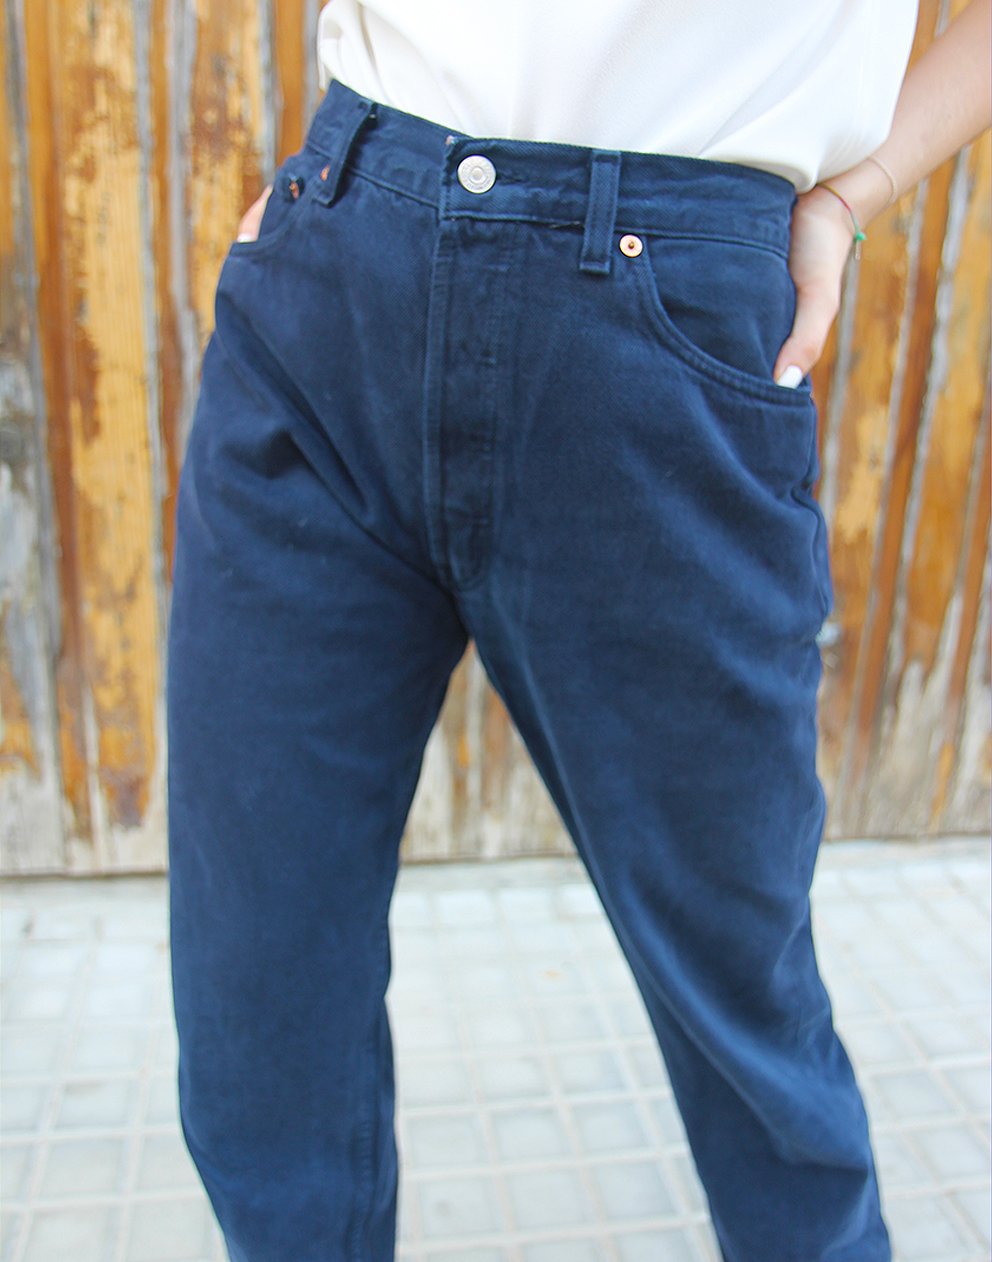 Original Levi's 501 Navy Blue Denim High Rise Tall Jeans 25"/ 63cm Waist